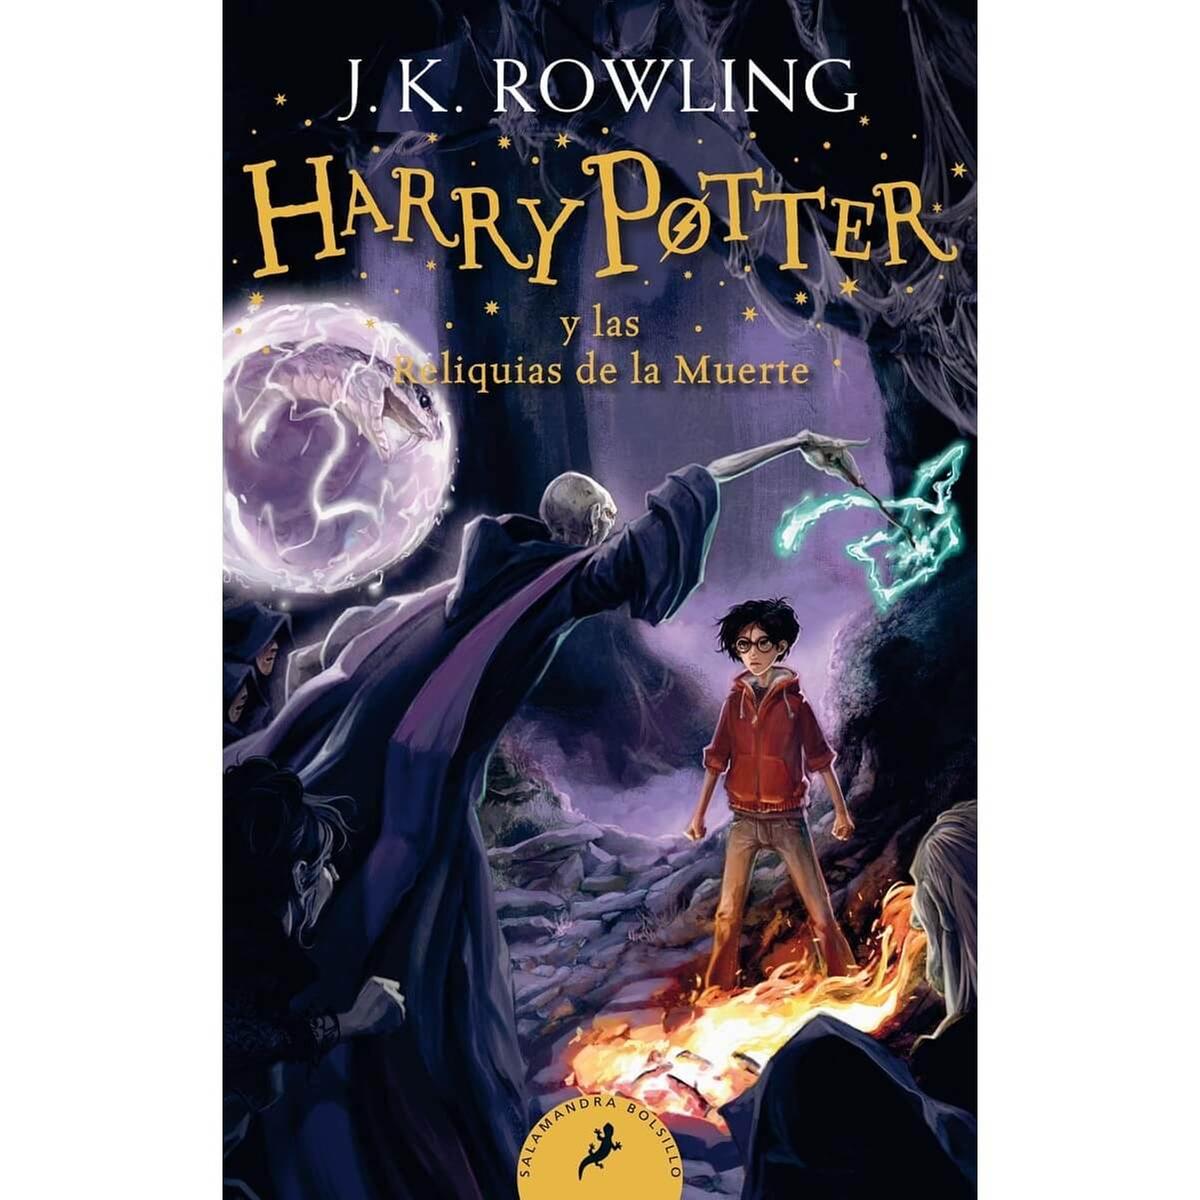 Harry Potter y las reliquias de la muerte | Harry Potter | Toys"R"Us España